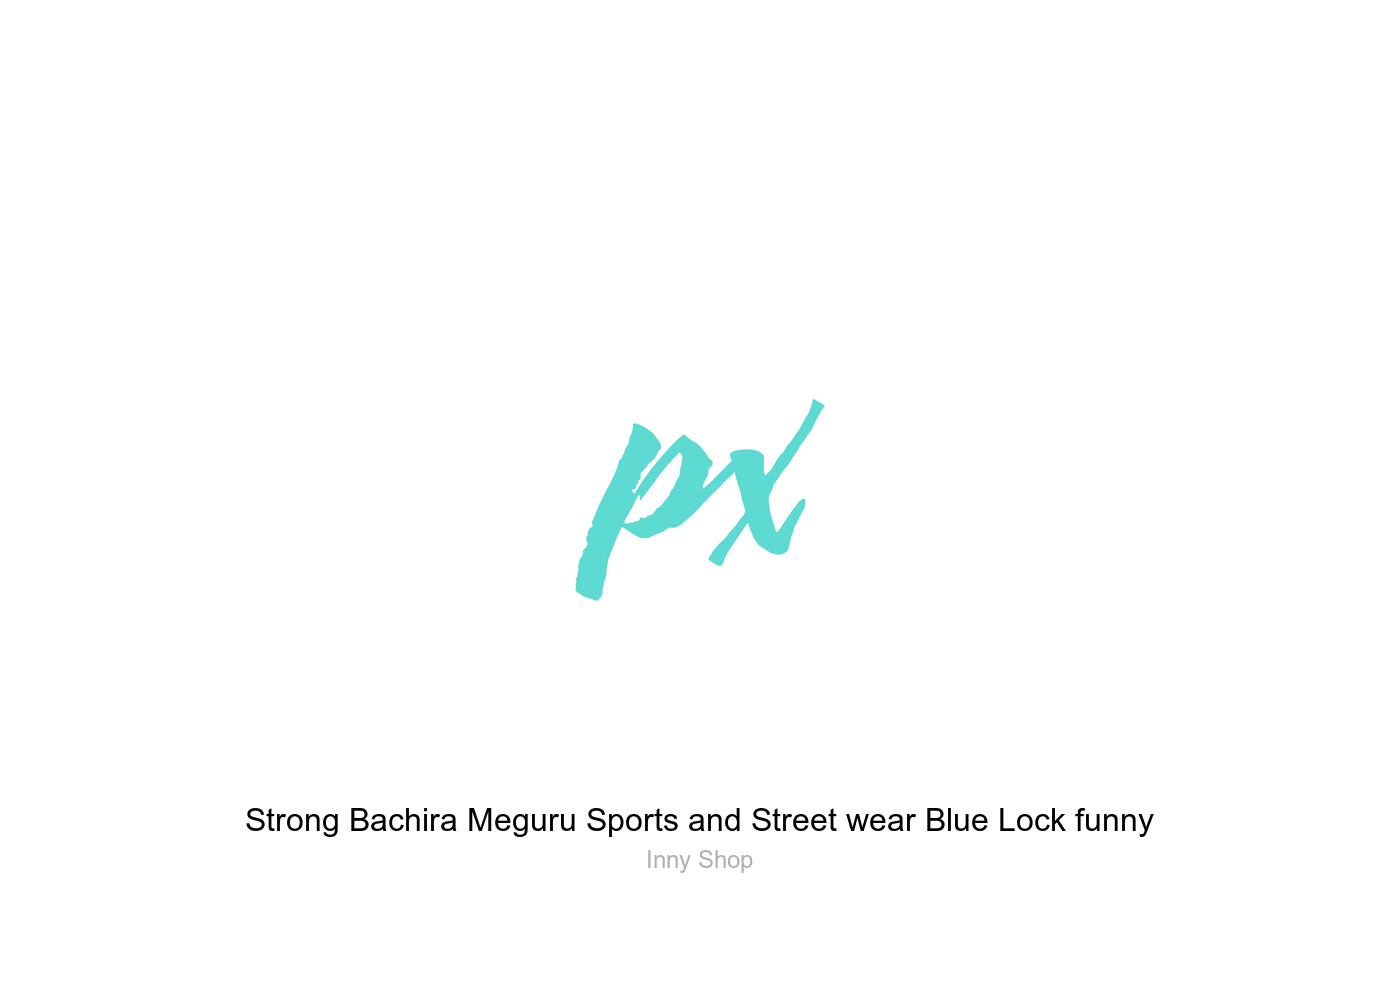 Strong Bachira Meguru Sports and Street wear Blue Lock funny Sticker by  Inny Shop - Pixels